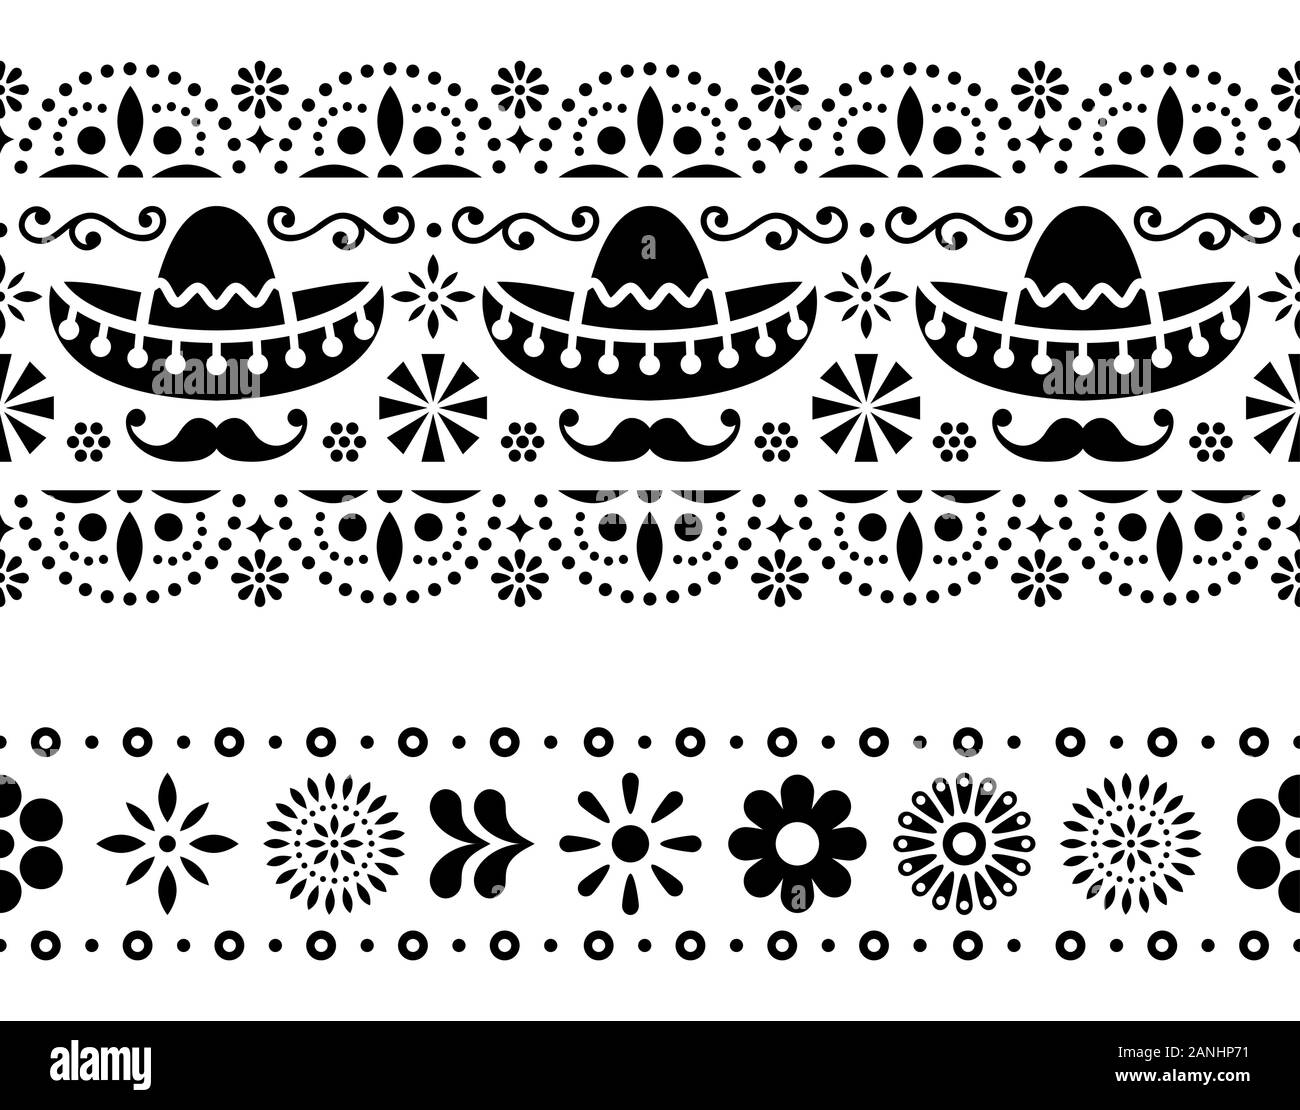 Mexikanische nahtlose Vektor Muster mit Sombrero, Schnurrbart und Blumen - Textil, Tapeten Design Stock Vektor